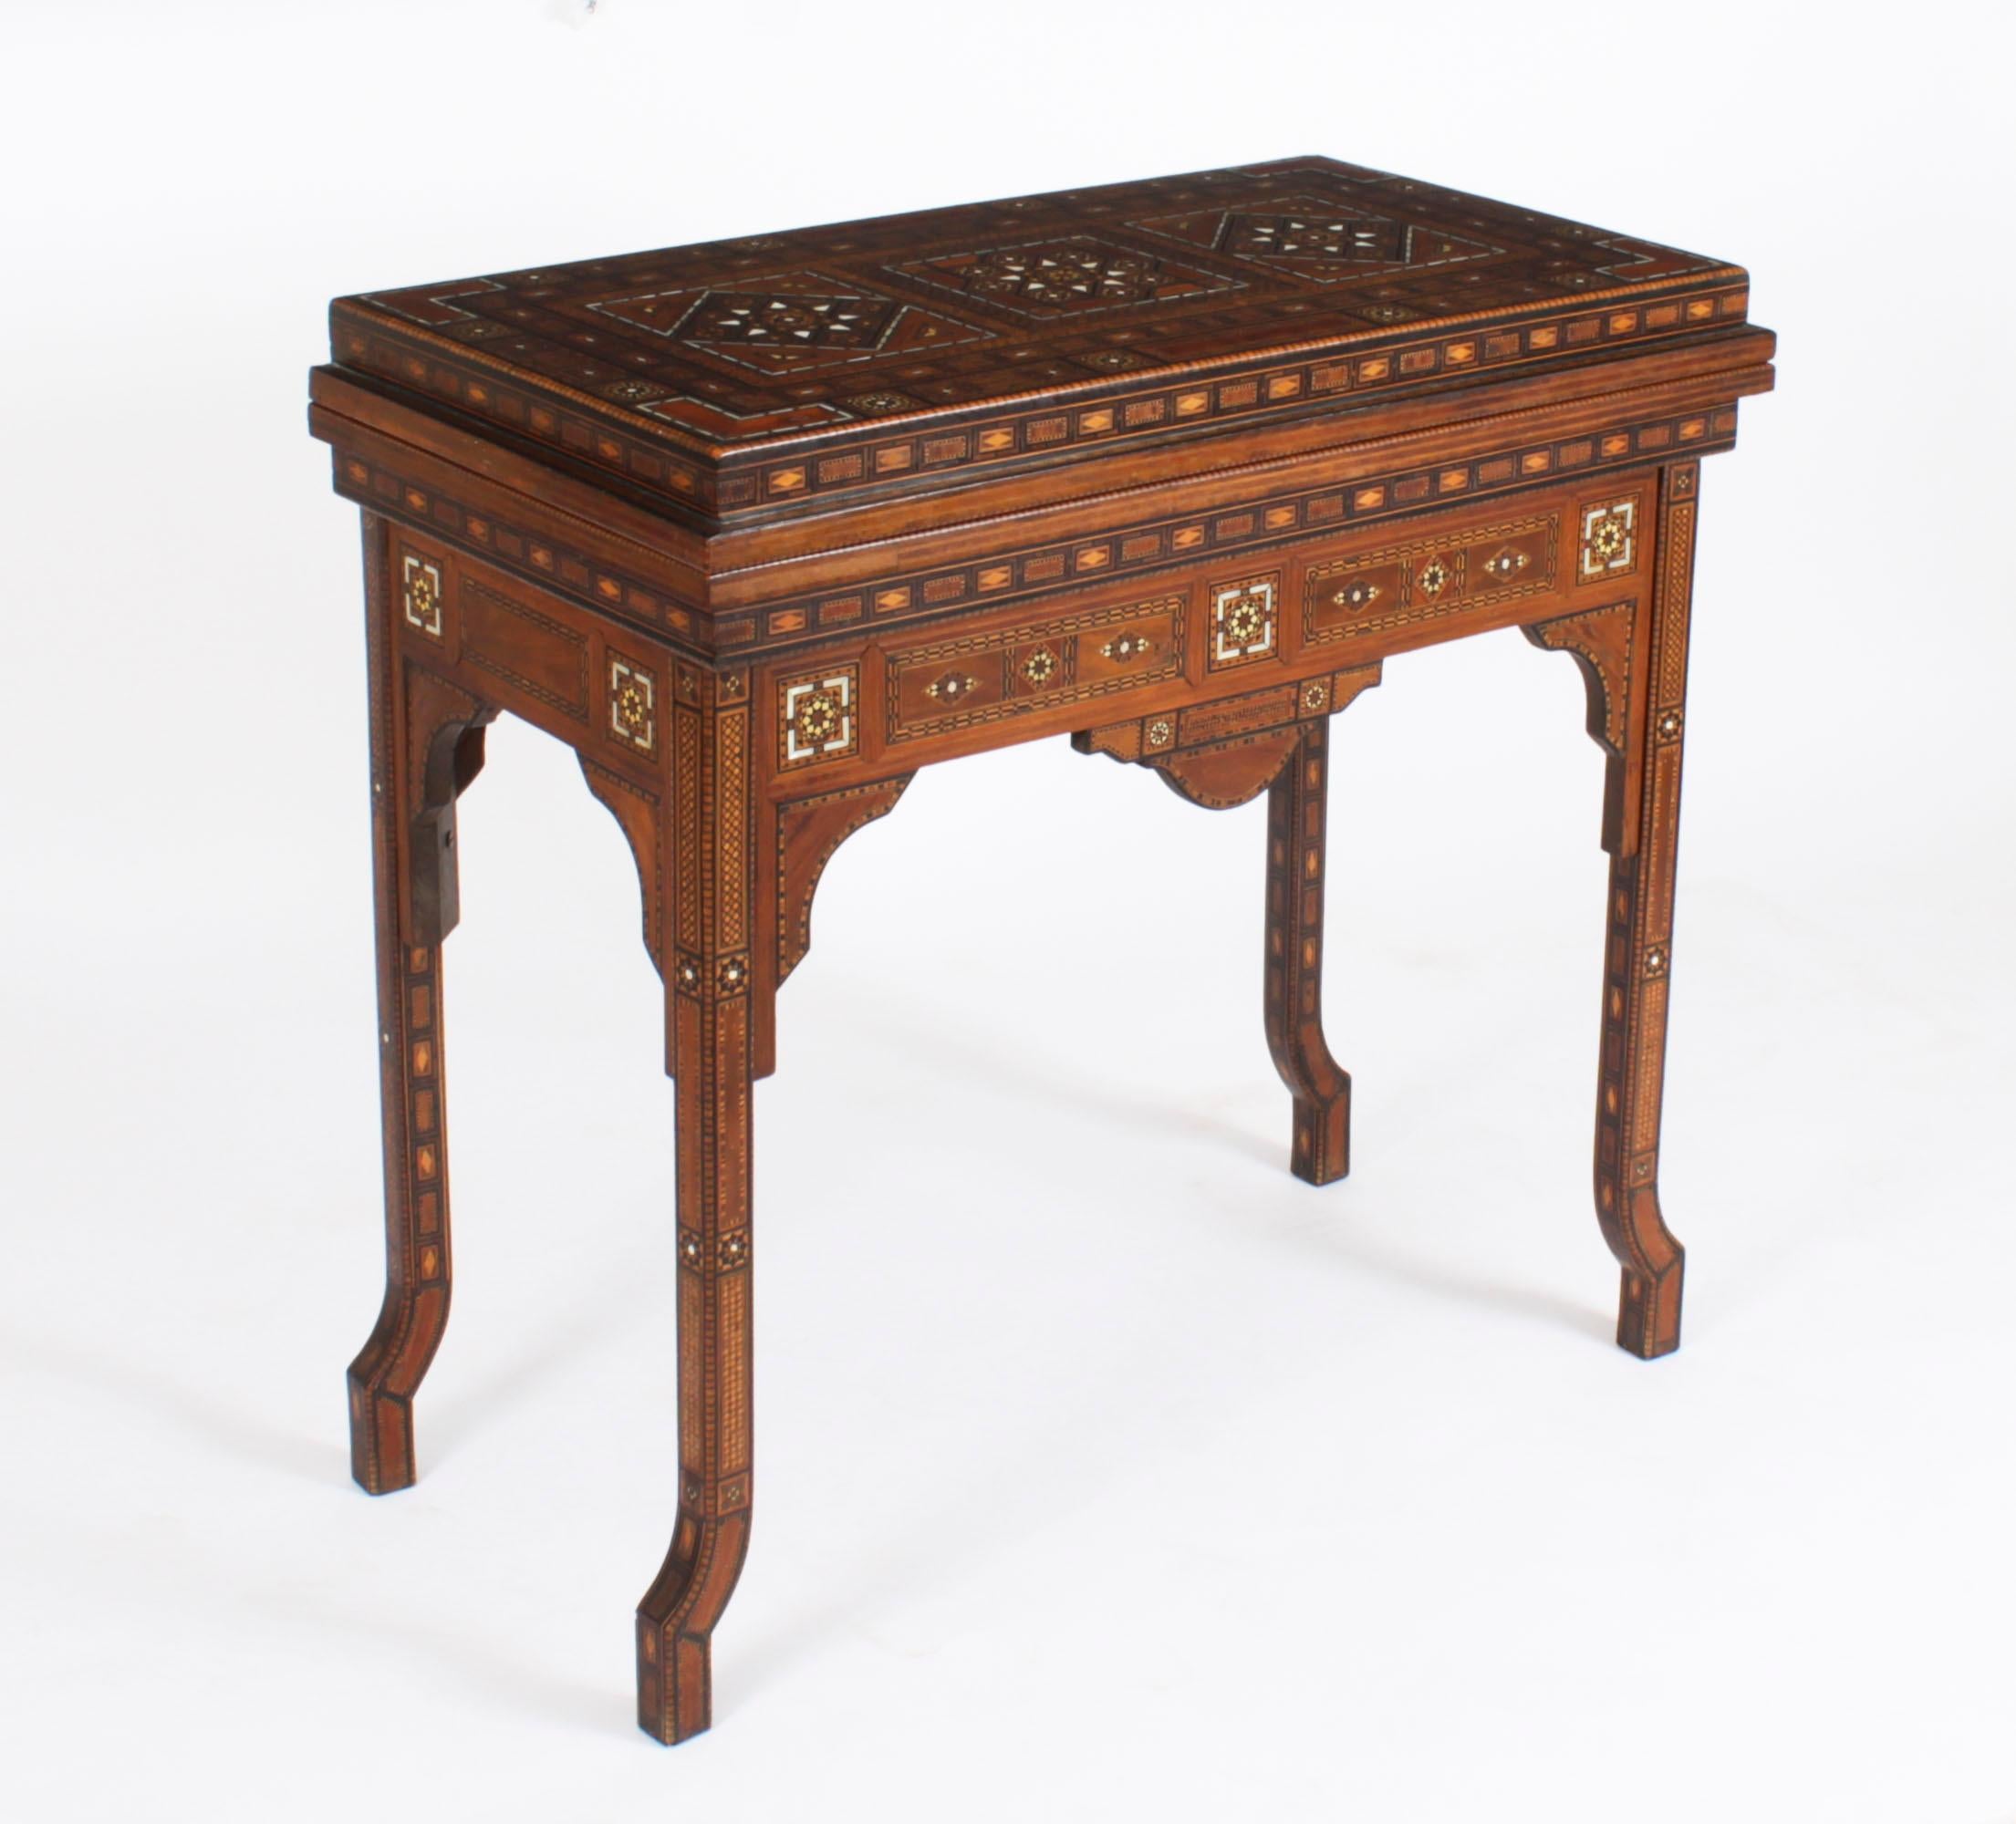 Dieser reichlich mit Intarsien versehene Spieltisch aus syrischem Damast stammt aus der Zeit um 1900 und hat  mehrfache geometrische und asymmetrische Intarsien aus verschiedenen Holzarten

Der Scharnierdeckel lässt sich öffnen und gibt den Blick